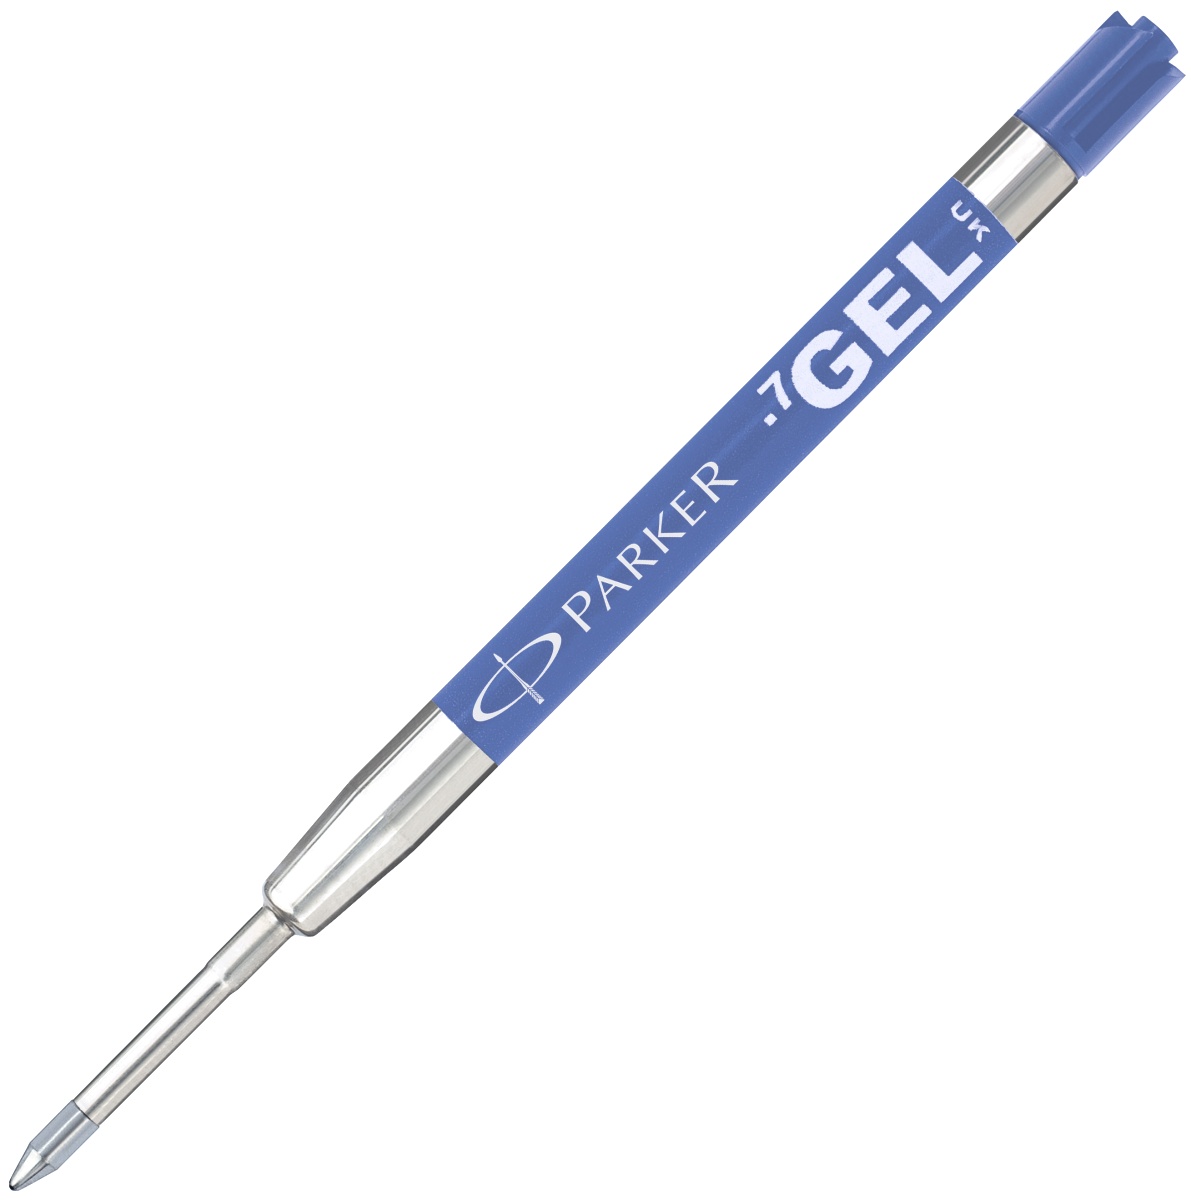  Синий гелевый стержень Parker Quink Gel Pen Refill Z05 (M), фото 2